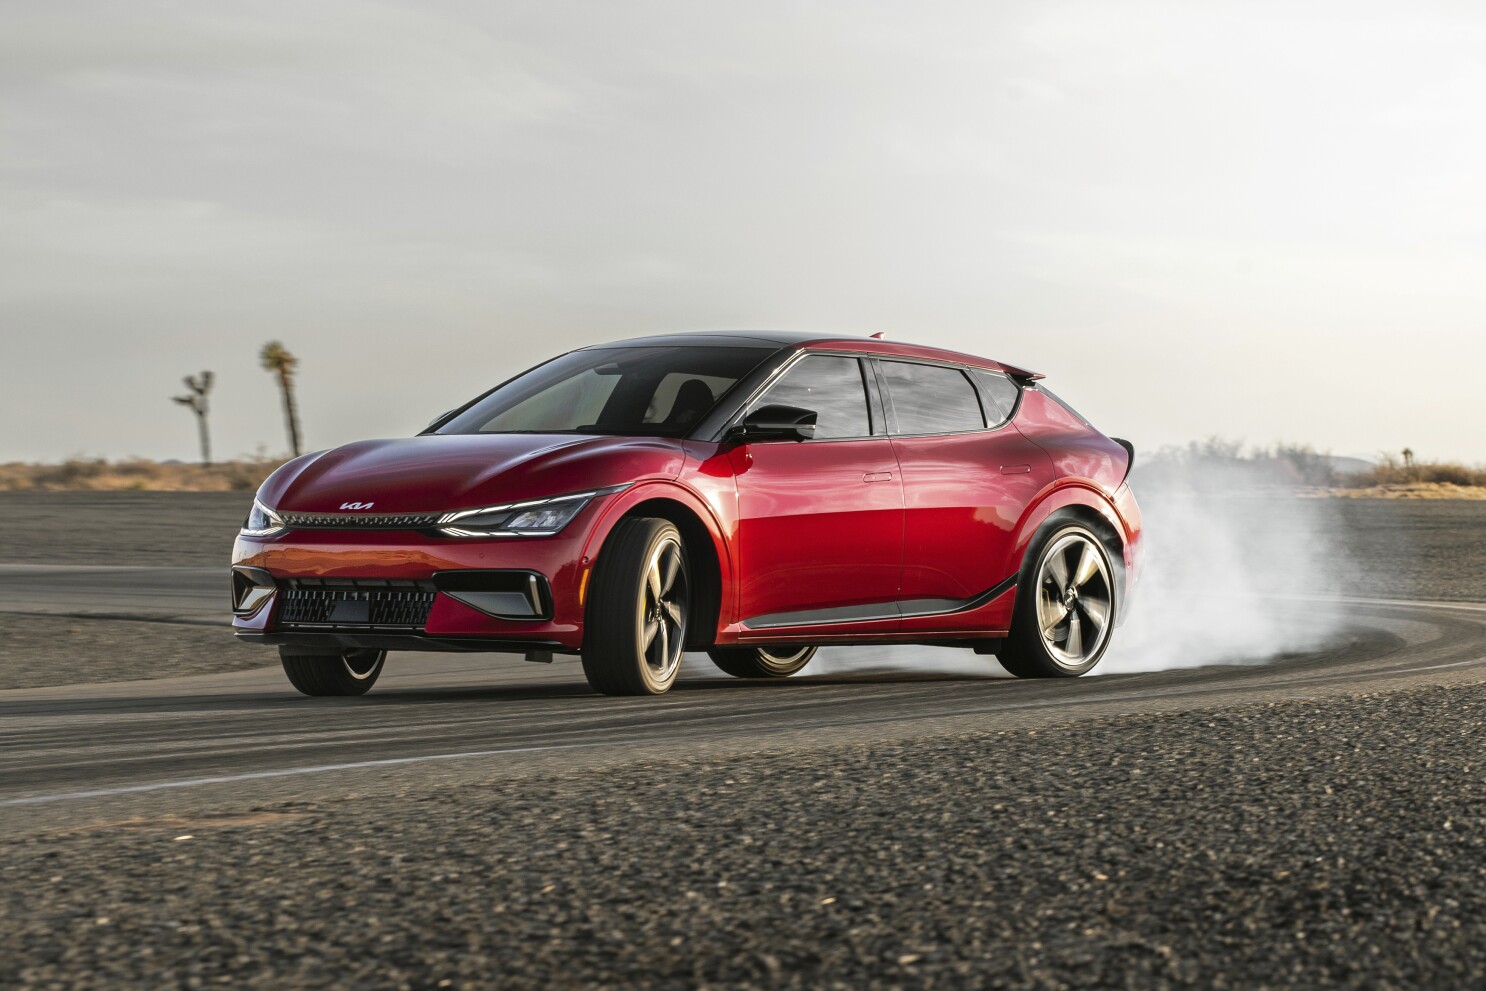 Essai comparatif. La Kia EV6 GT défie la Tesla Model Y Performance